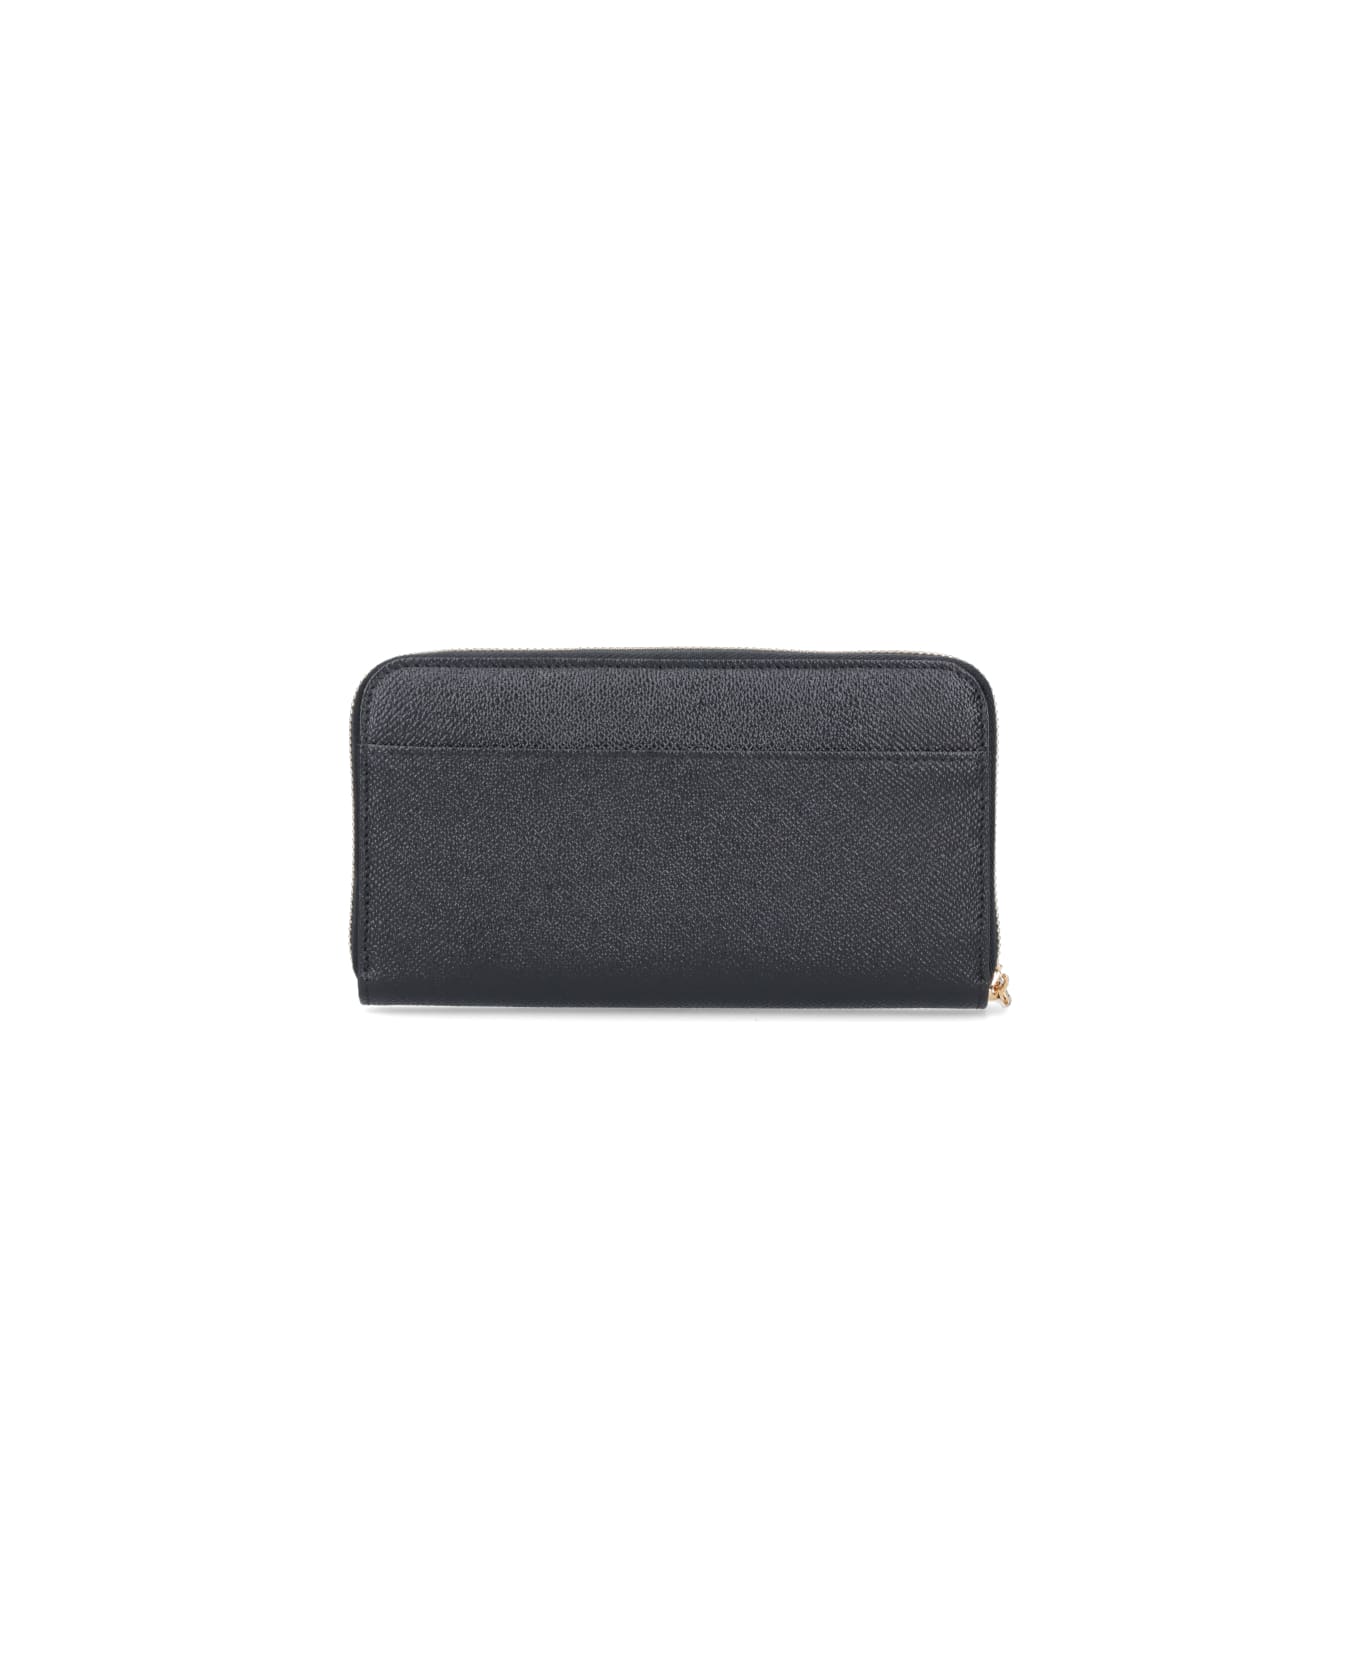 Dolce & Gabbana Zip-around Wallet - Black   財布